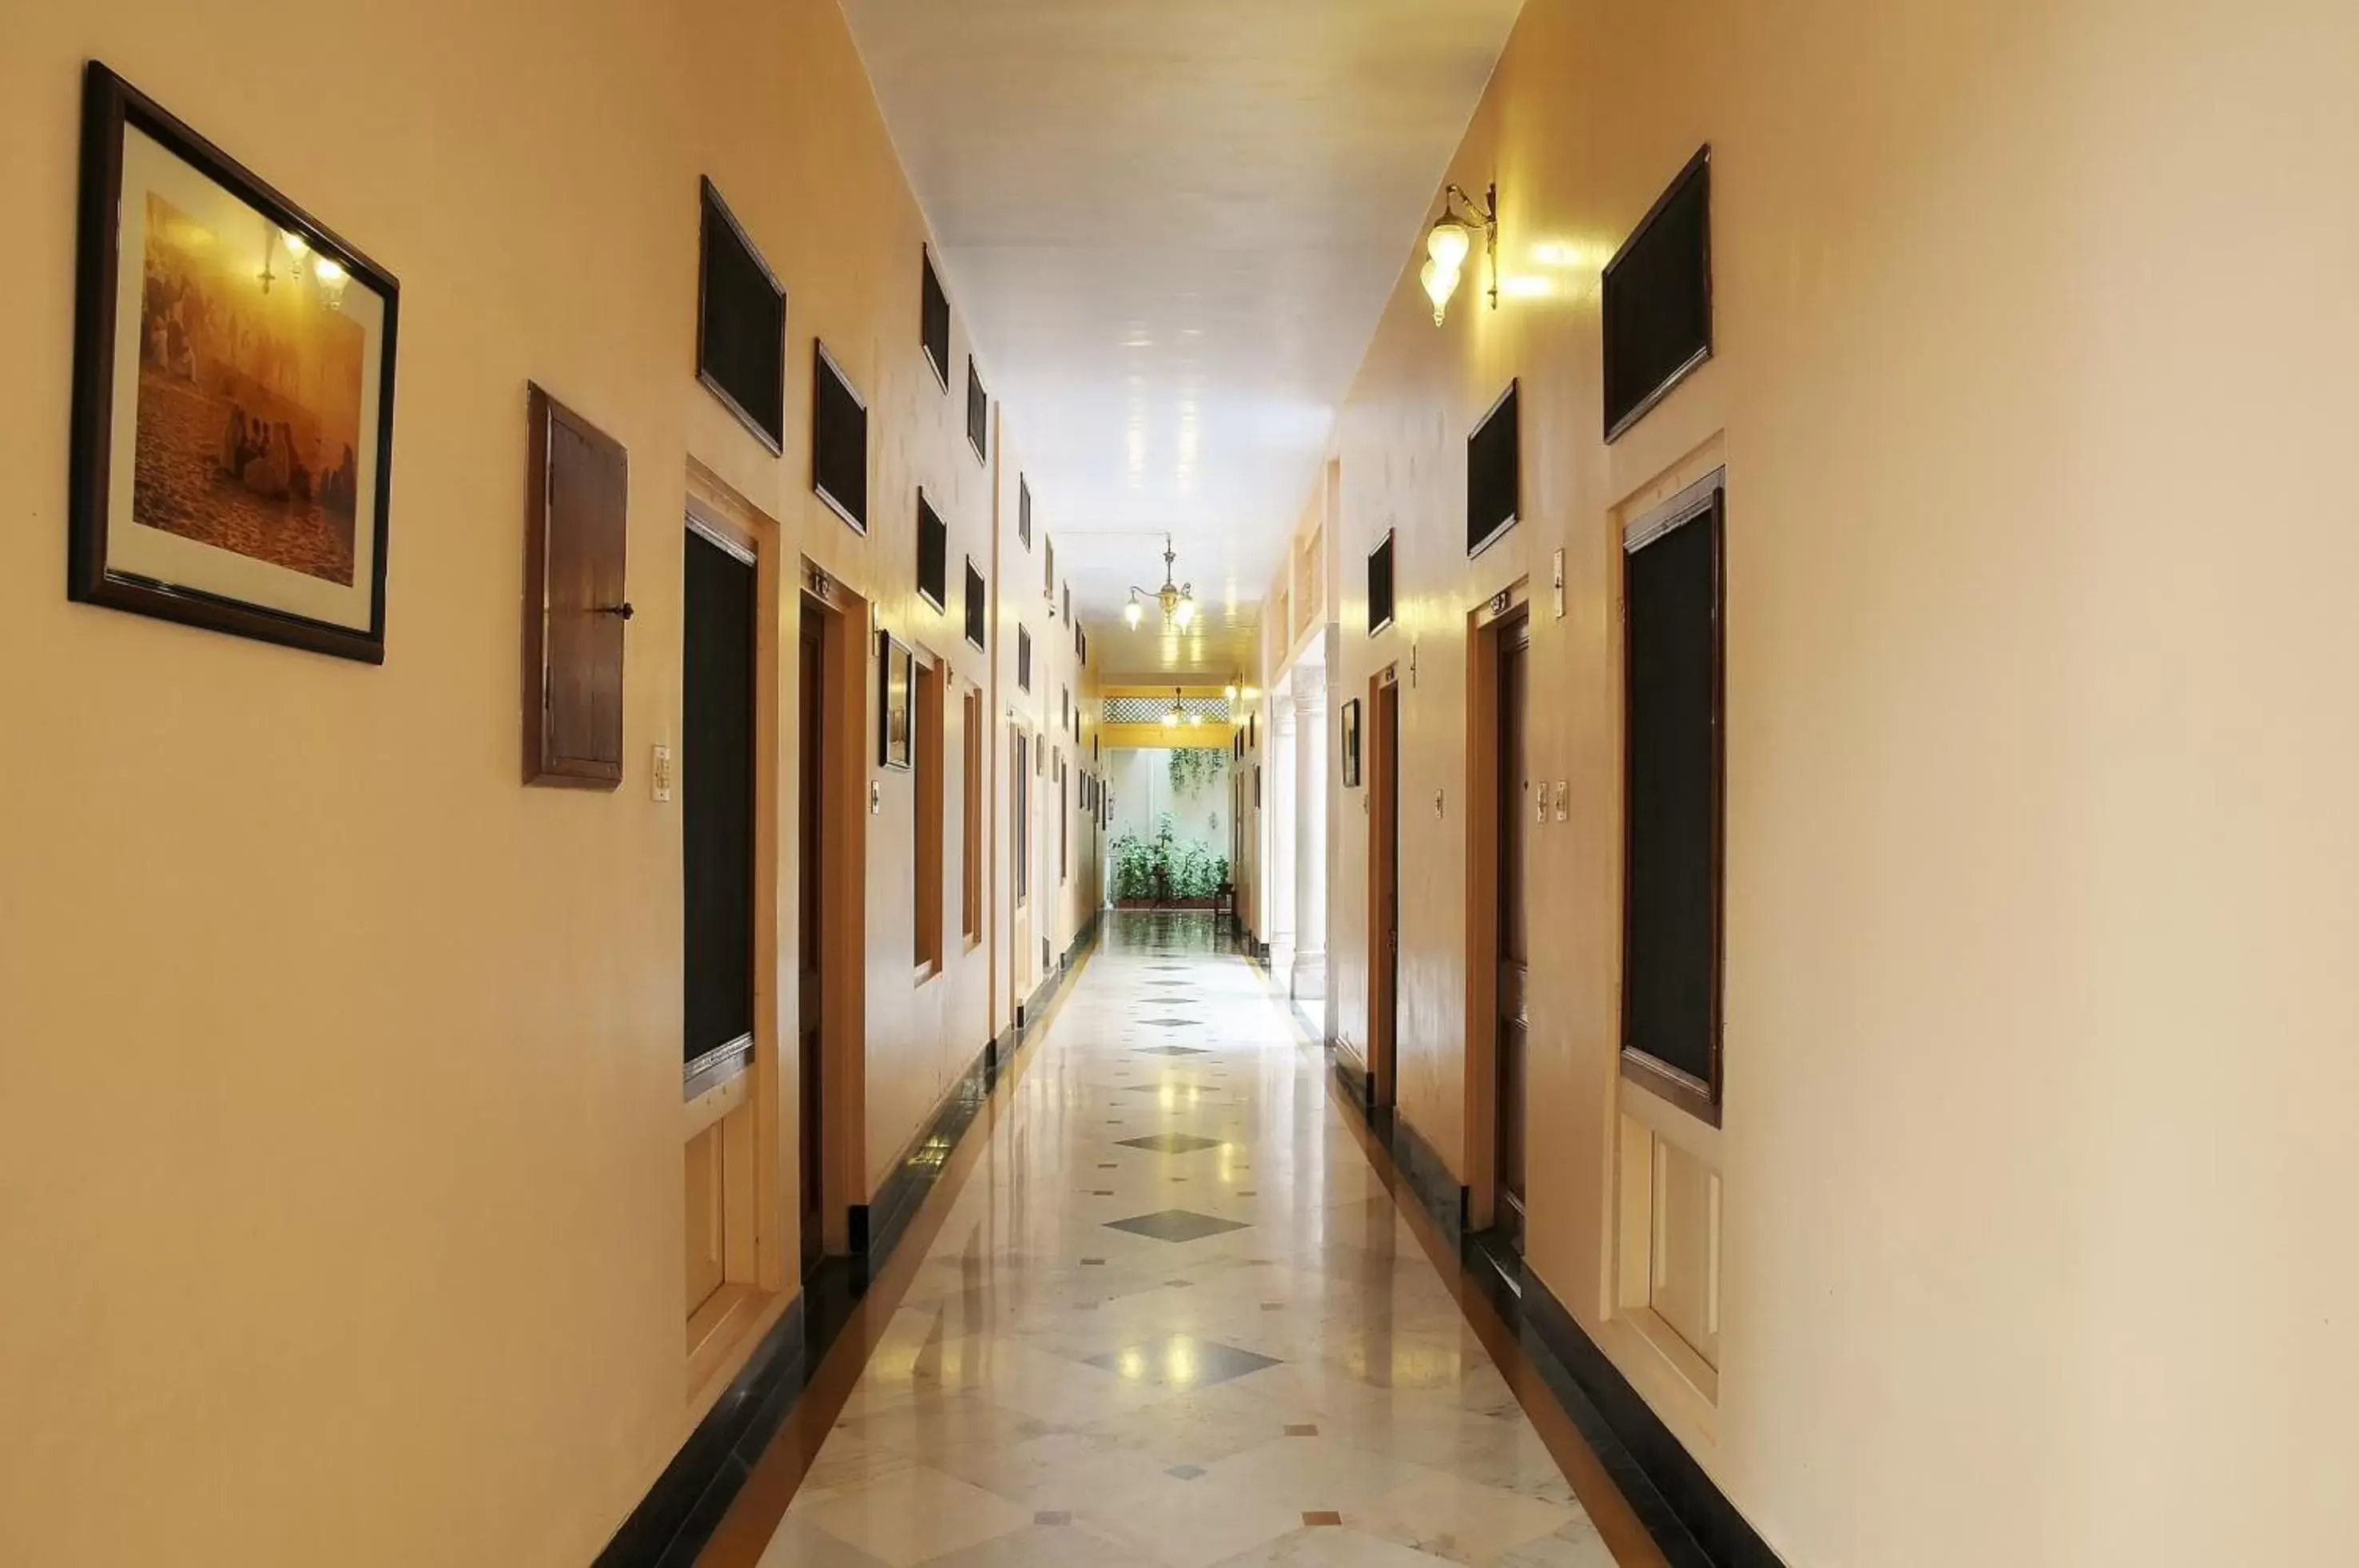 Lobby or reception in Hotel Arya Niwas